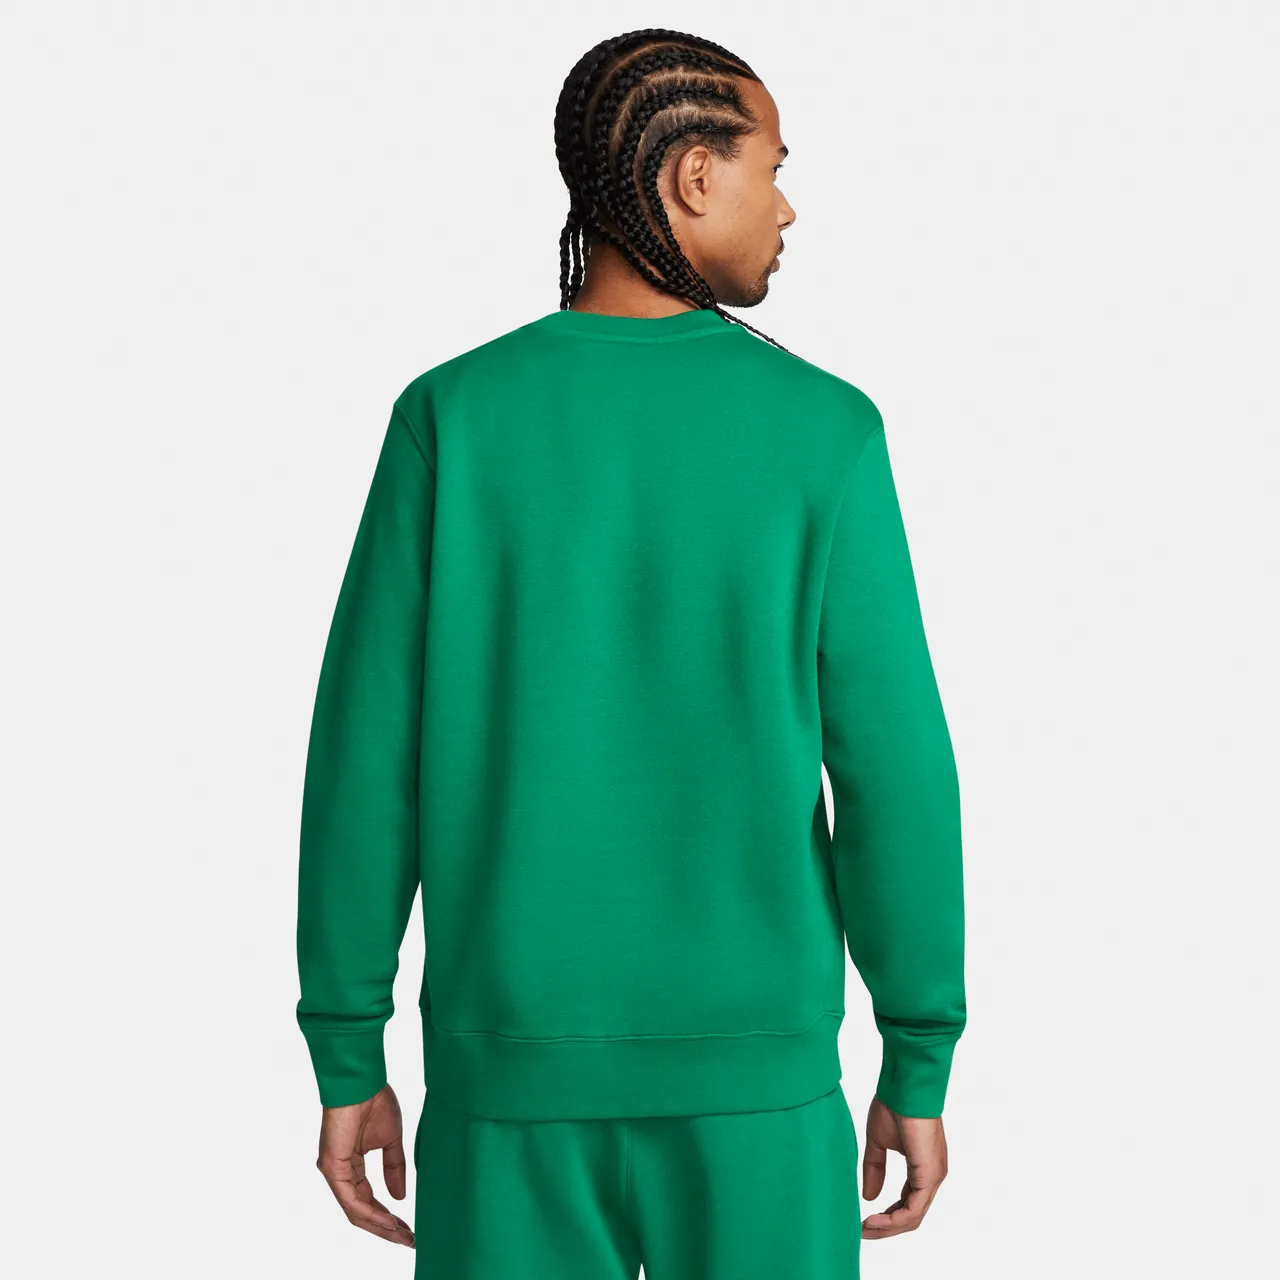 Nike Club Fleece Longsleeve Pullover mit Rundhalsausschnitt für Herren - Grün